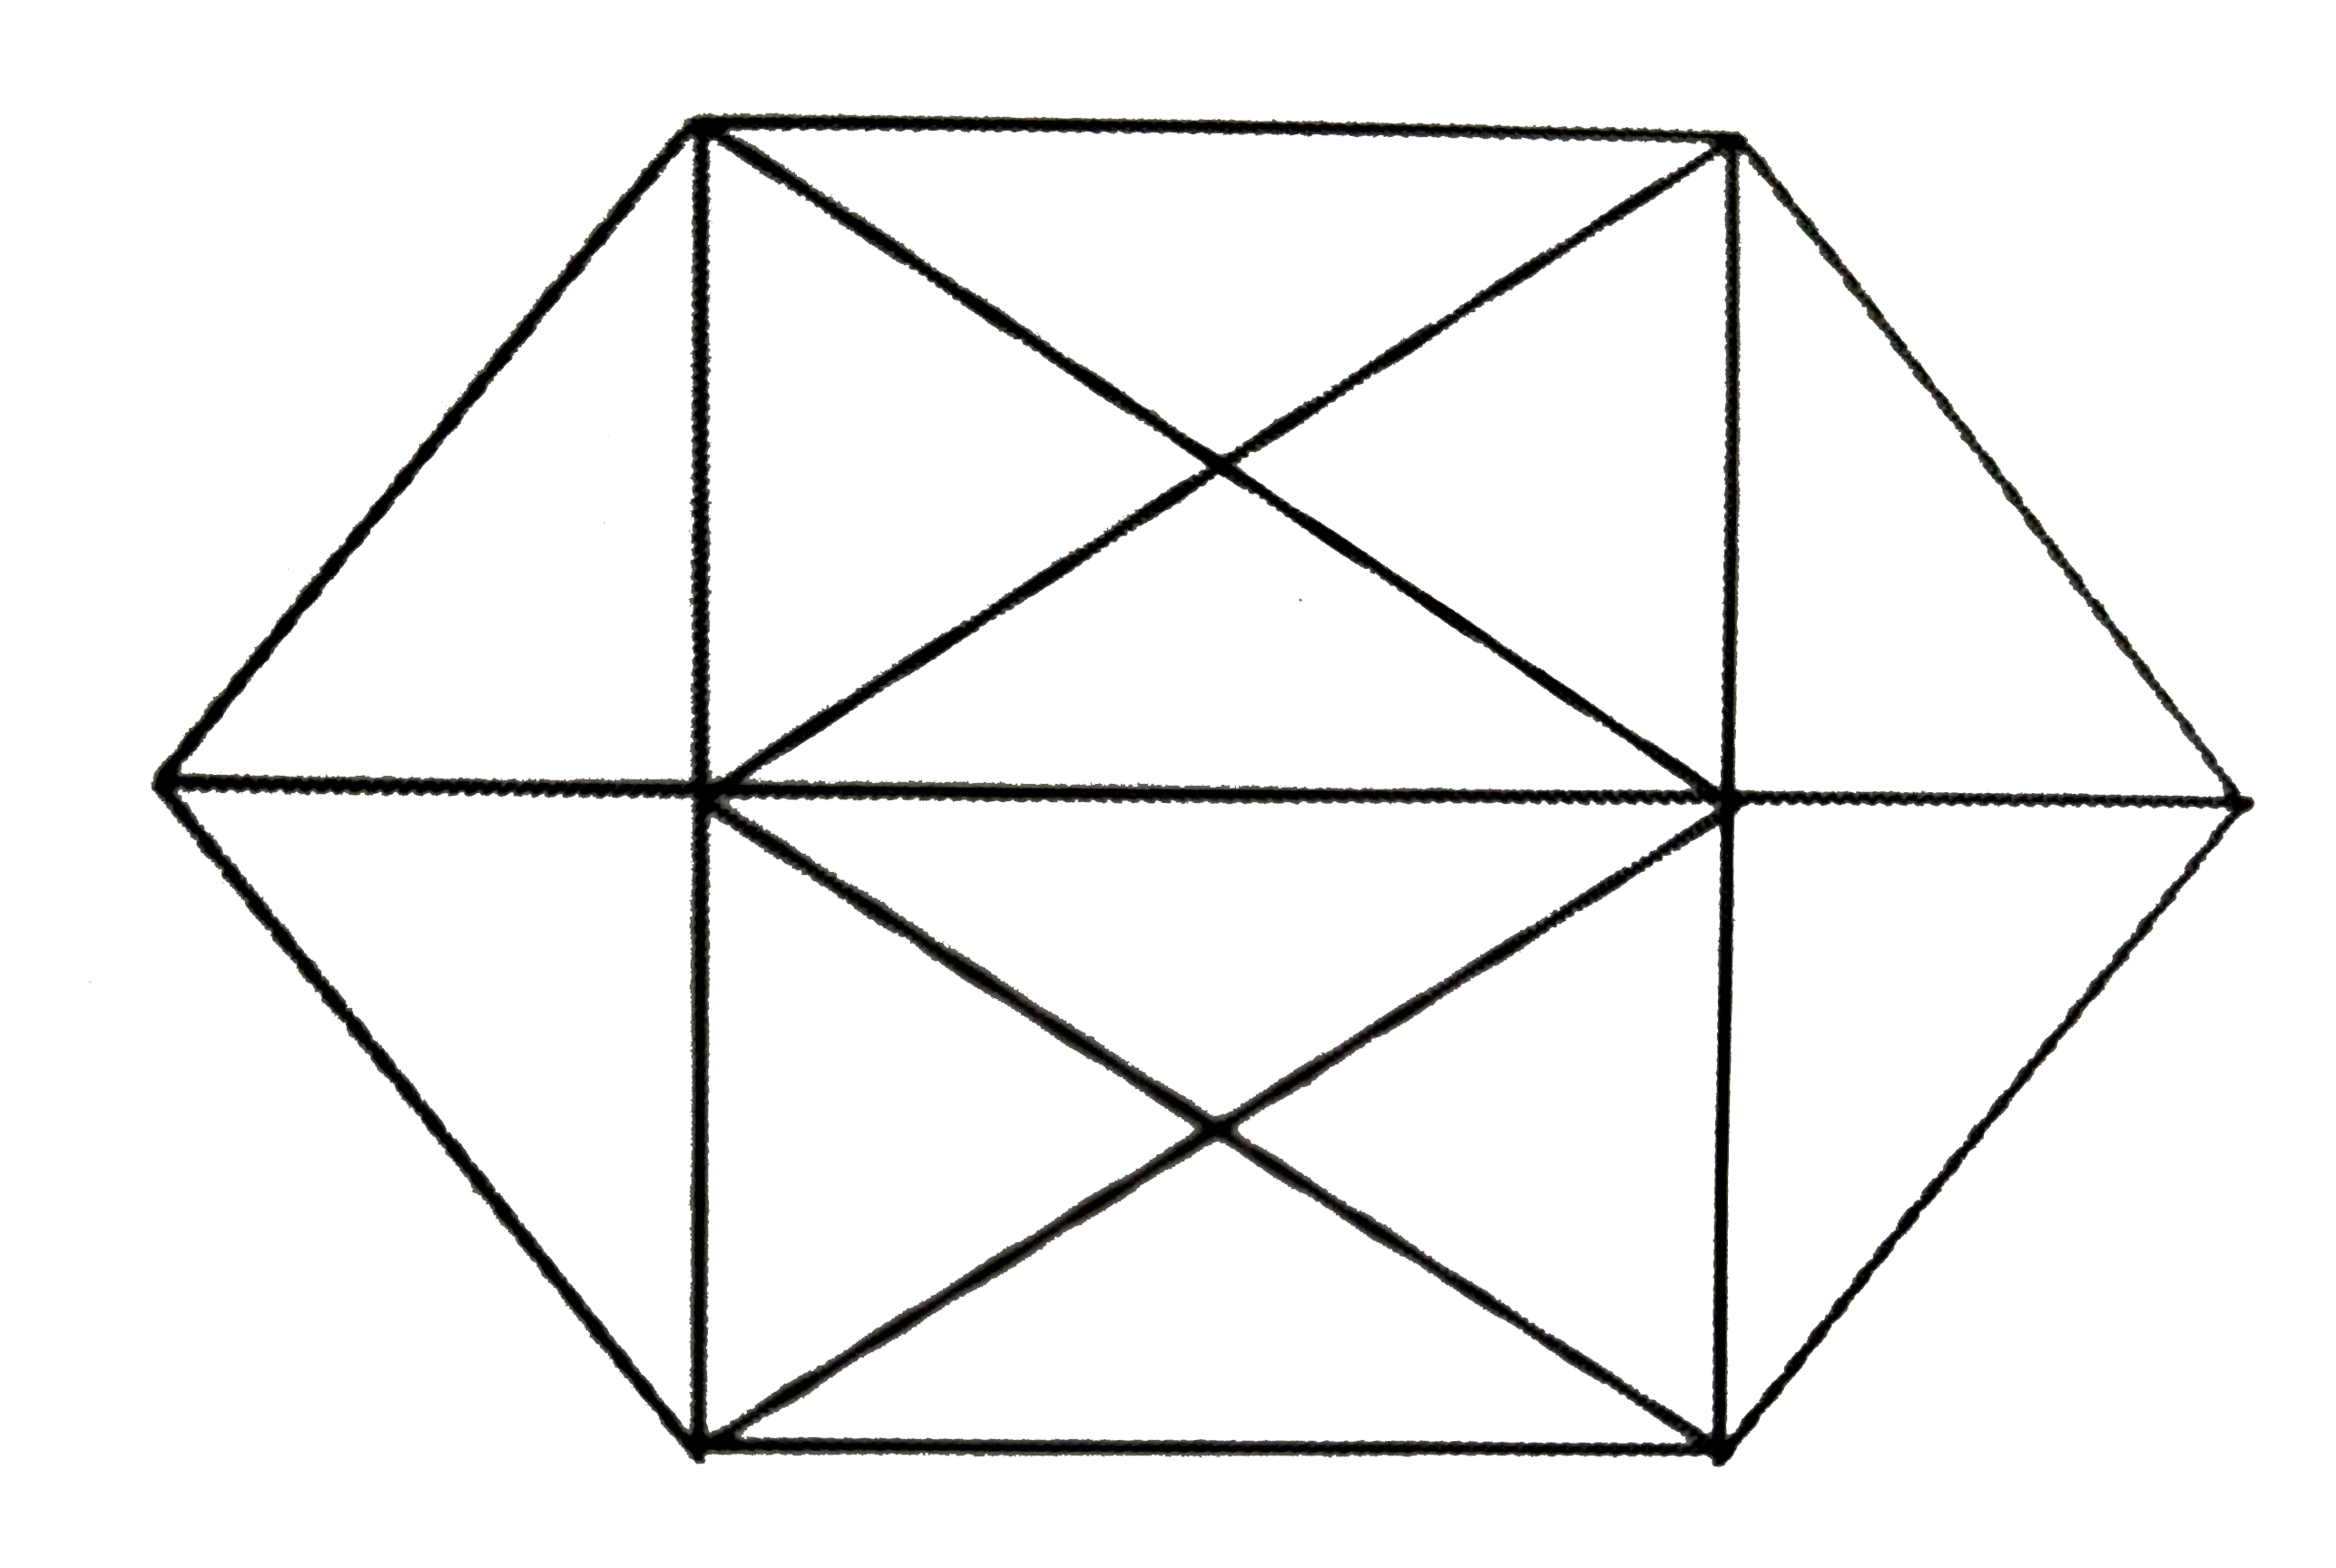 उपरोक्त आकृति में कितने त्रिभुज है ?